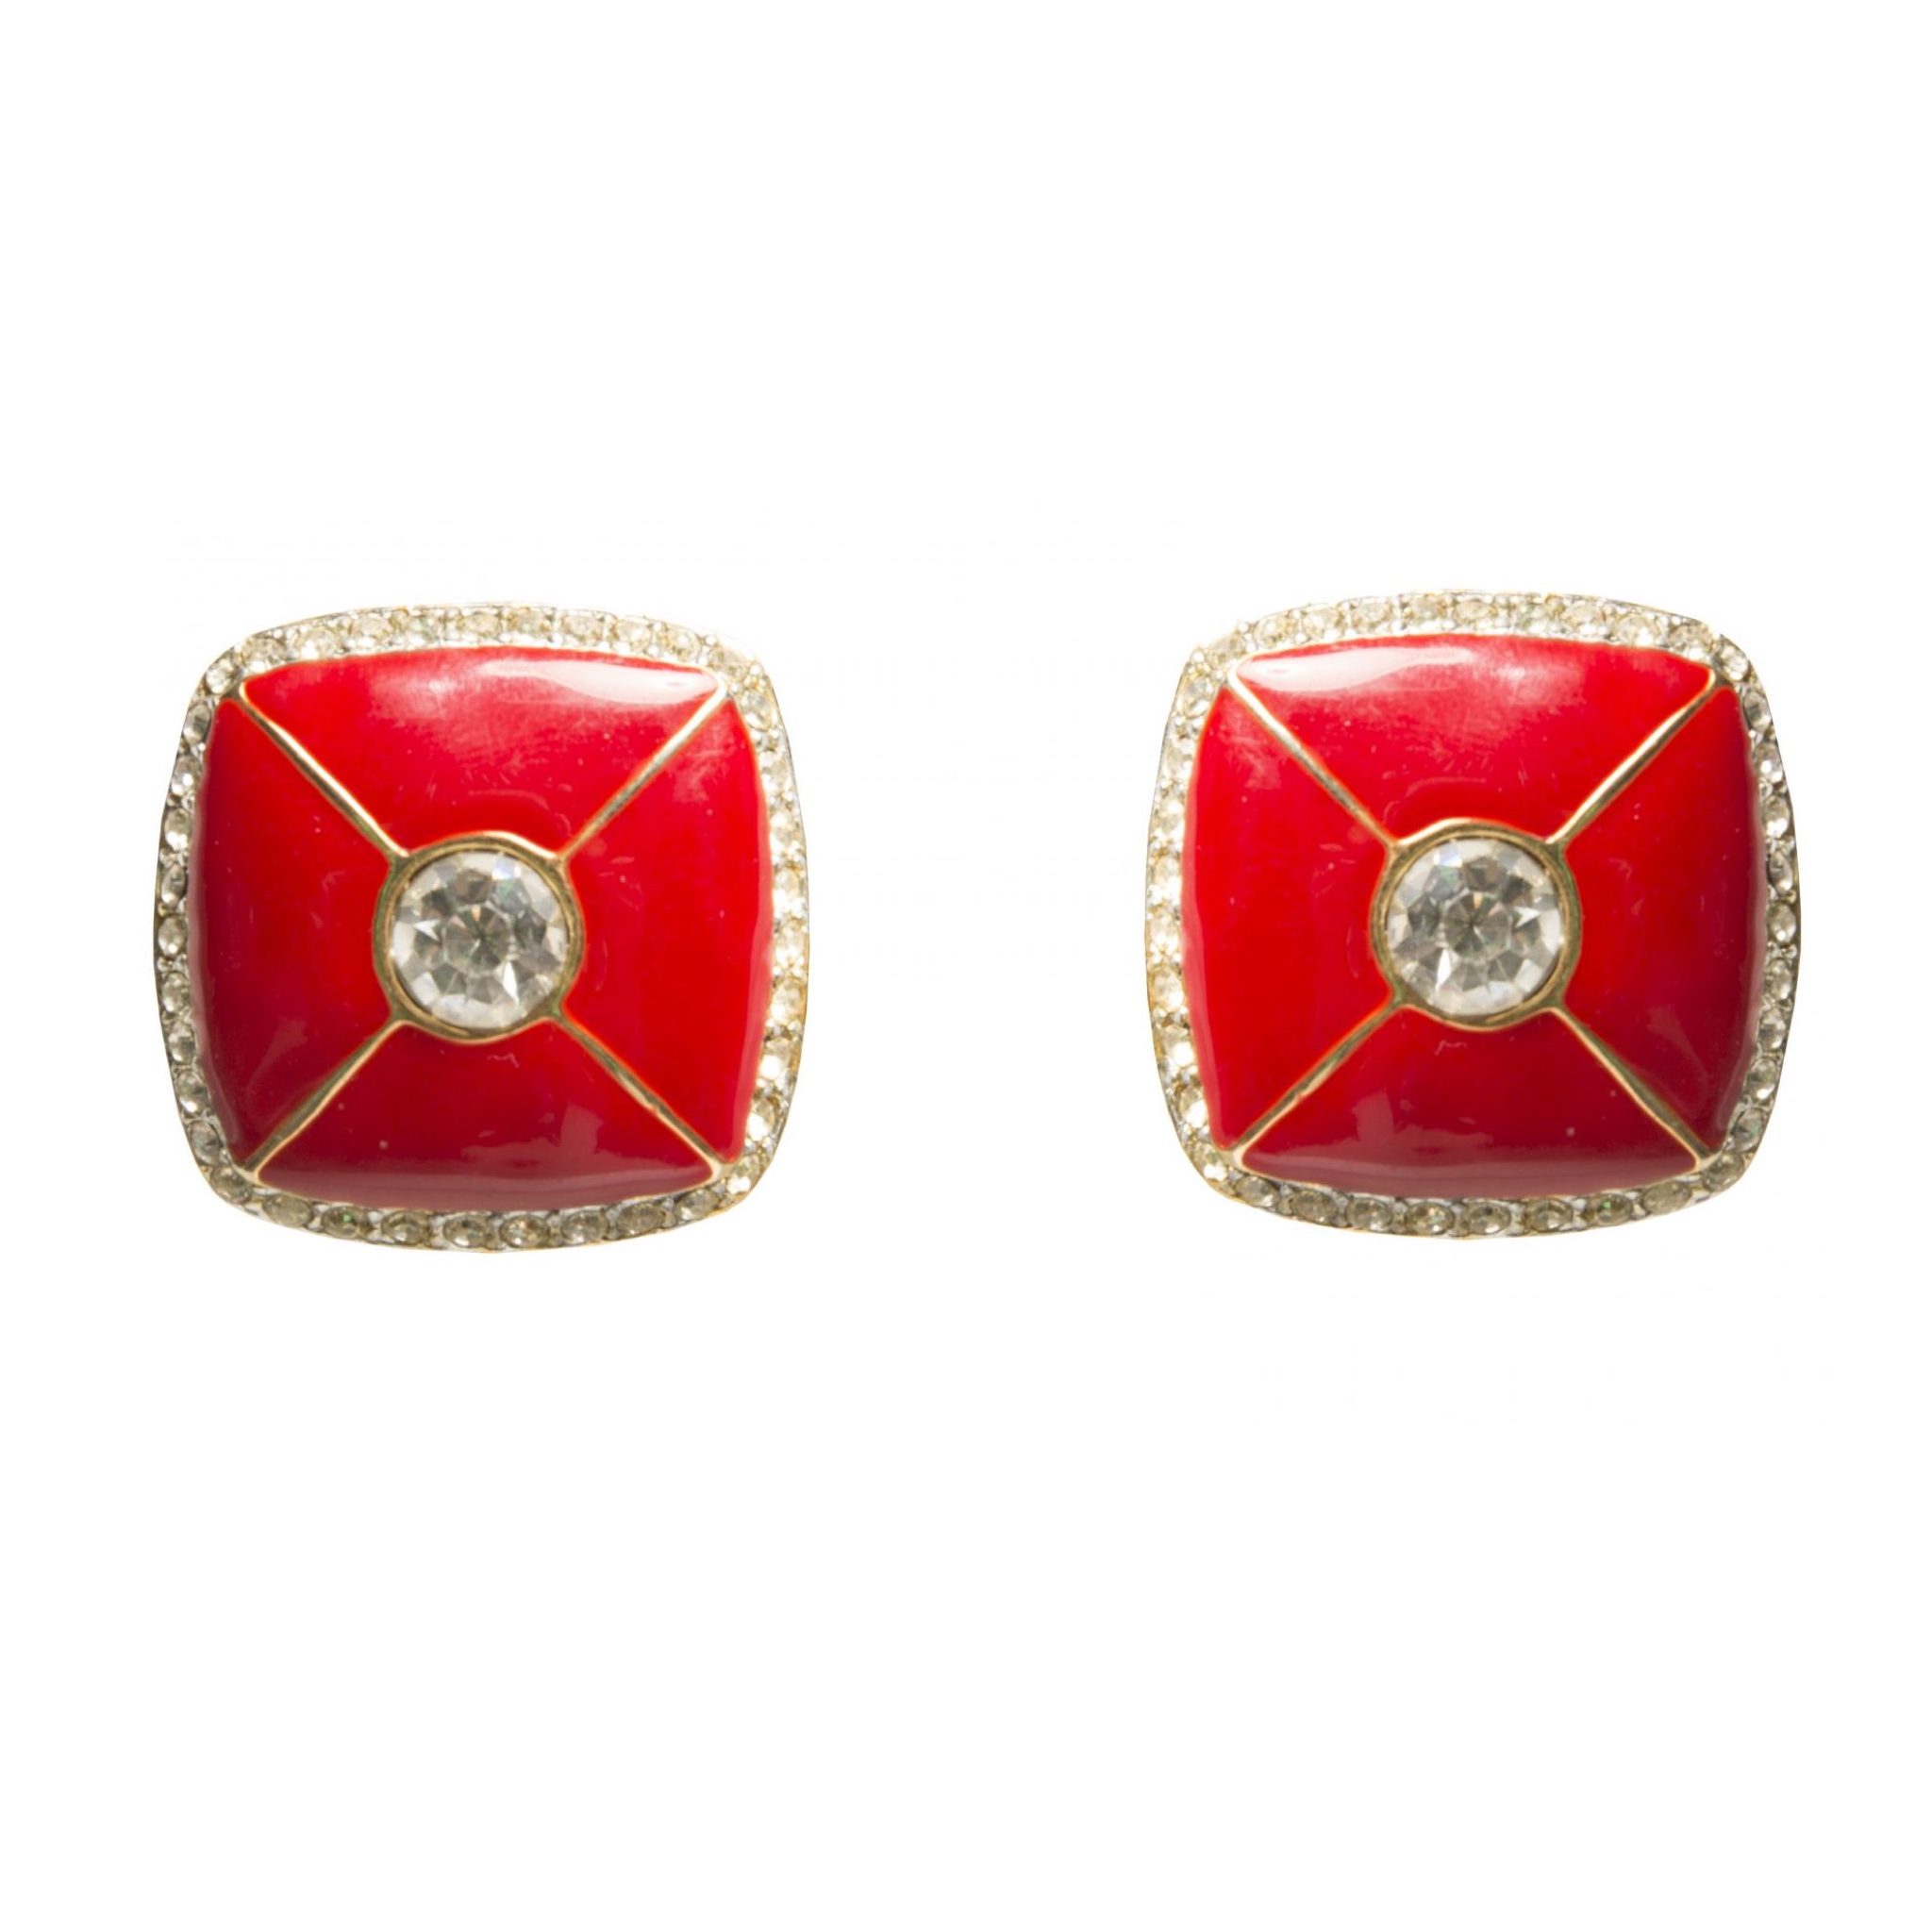 Vintage red enamel square earrings